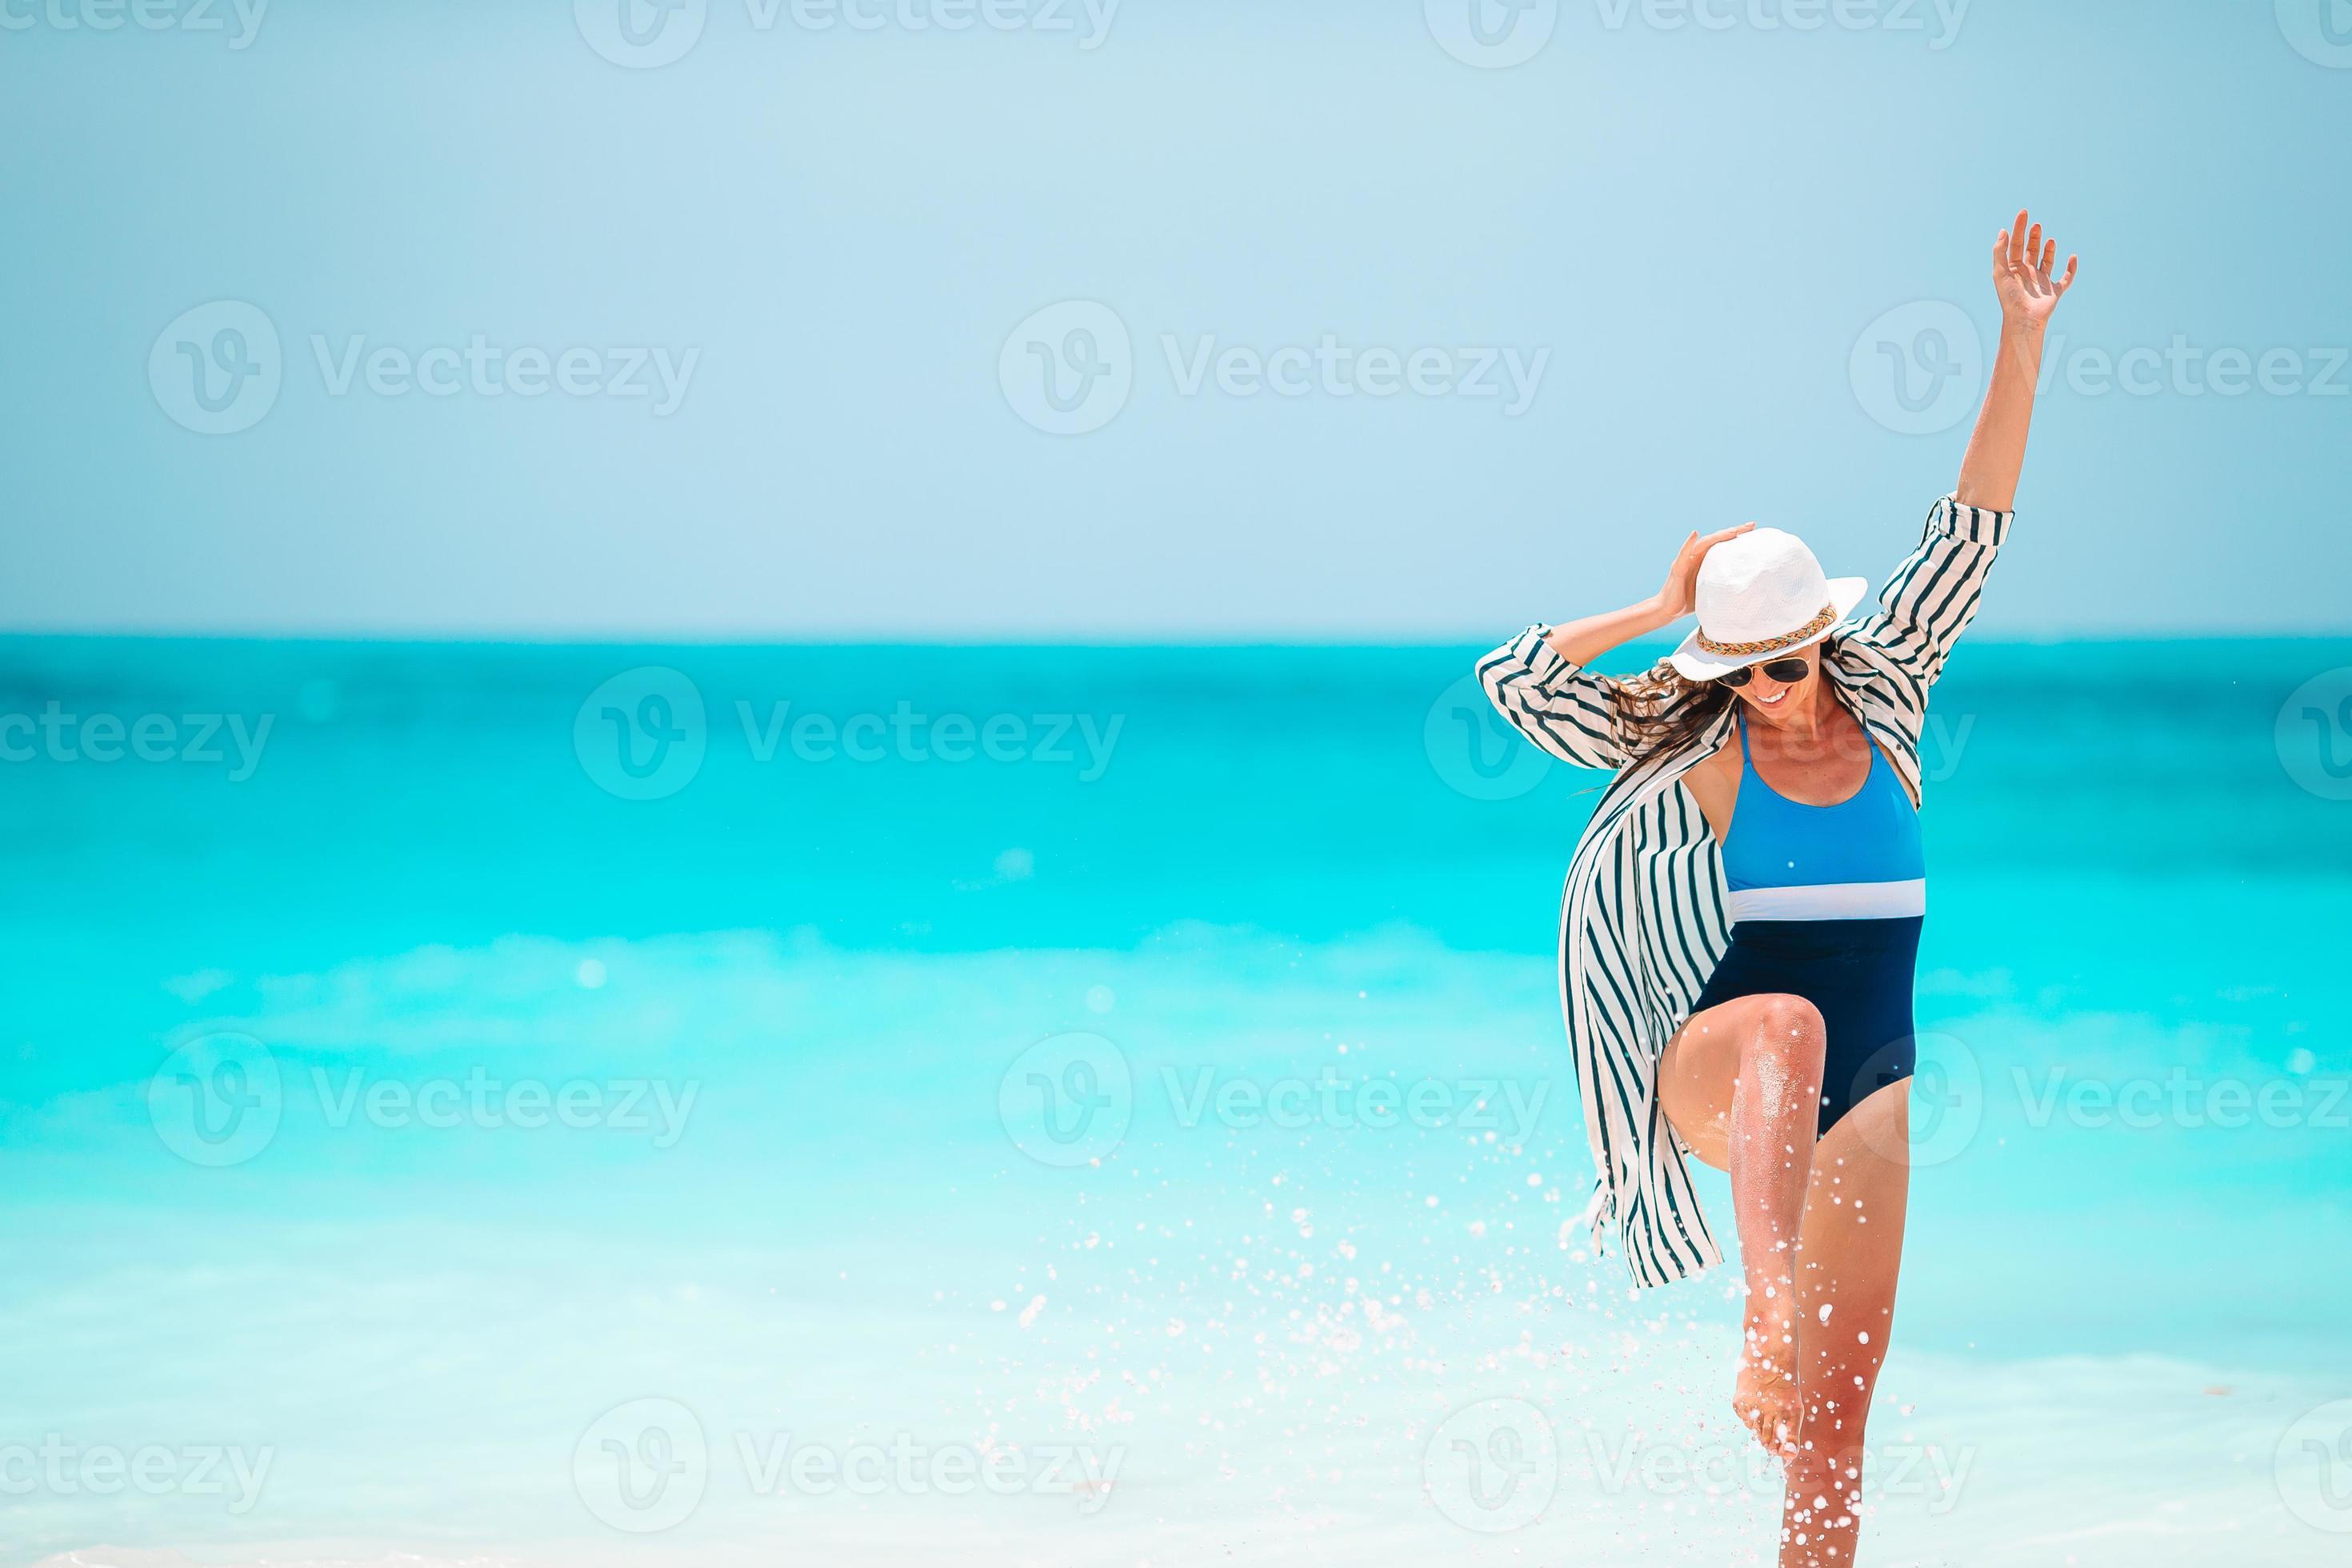 https://static.vecteezy.com/ti/photos-gratuite/p2/18064108-jeune-femme-heureuse-en-maillot-de-bain-sur-la-plage-blanche-photo.jpg